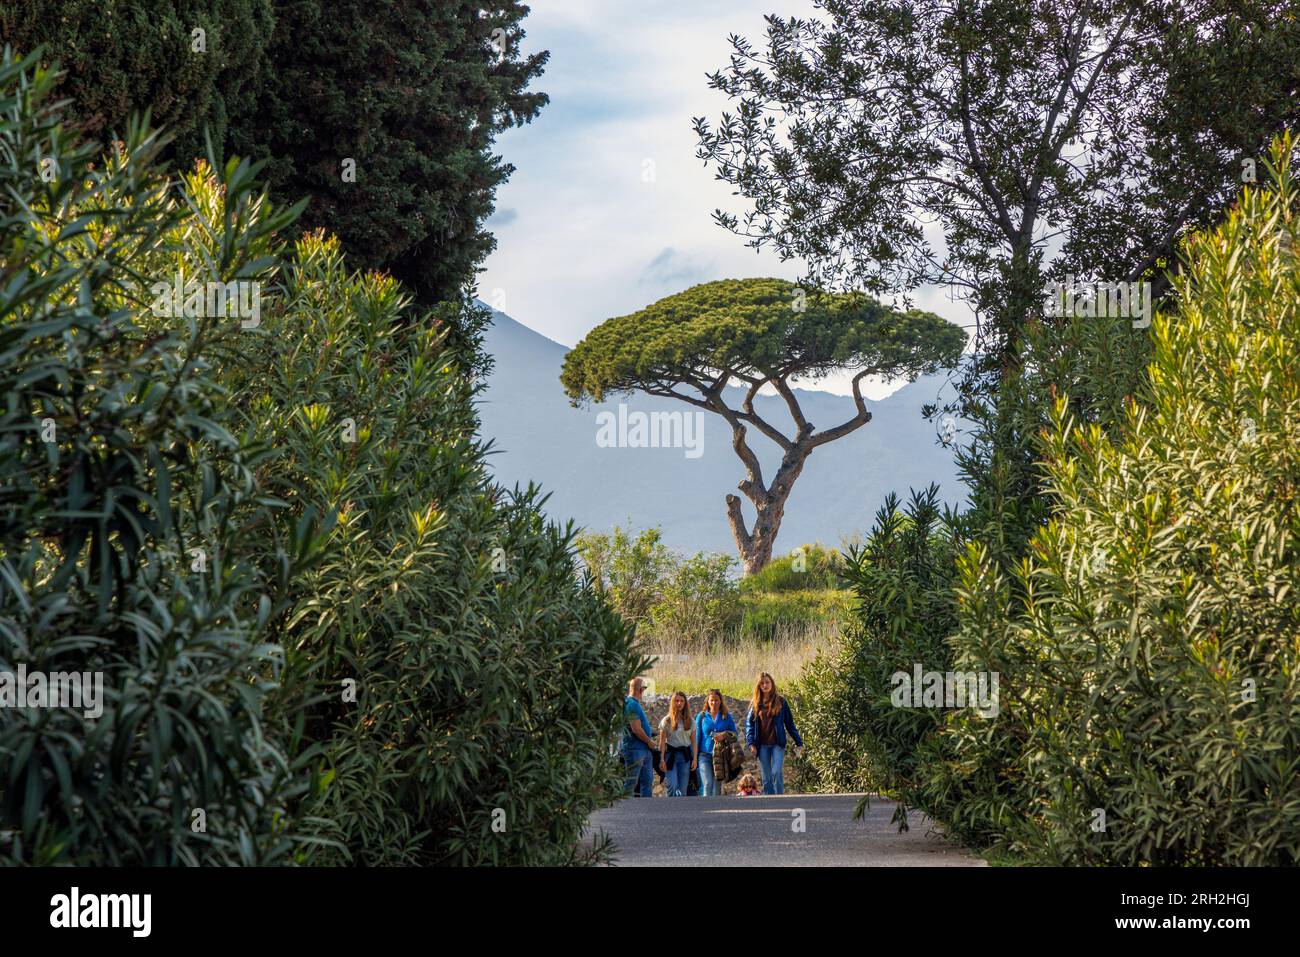 Sito archeologico di Pompei, Campania, Italia. I visitatori passeggiano tra le rovine. Pompei, Ercolano e Torre Annunziata sono collettivamente desi Foto Stock